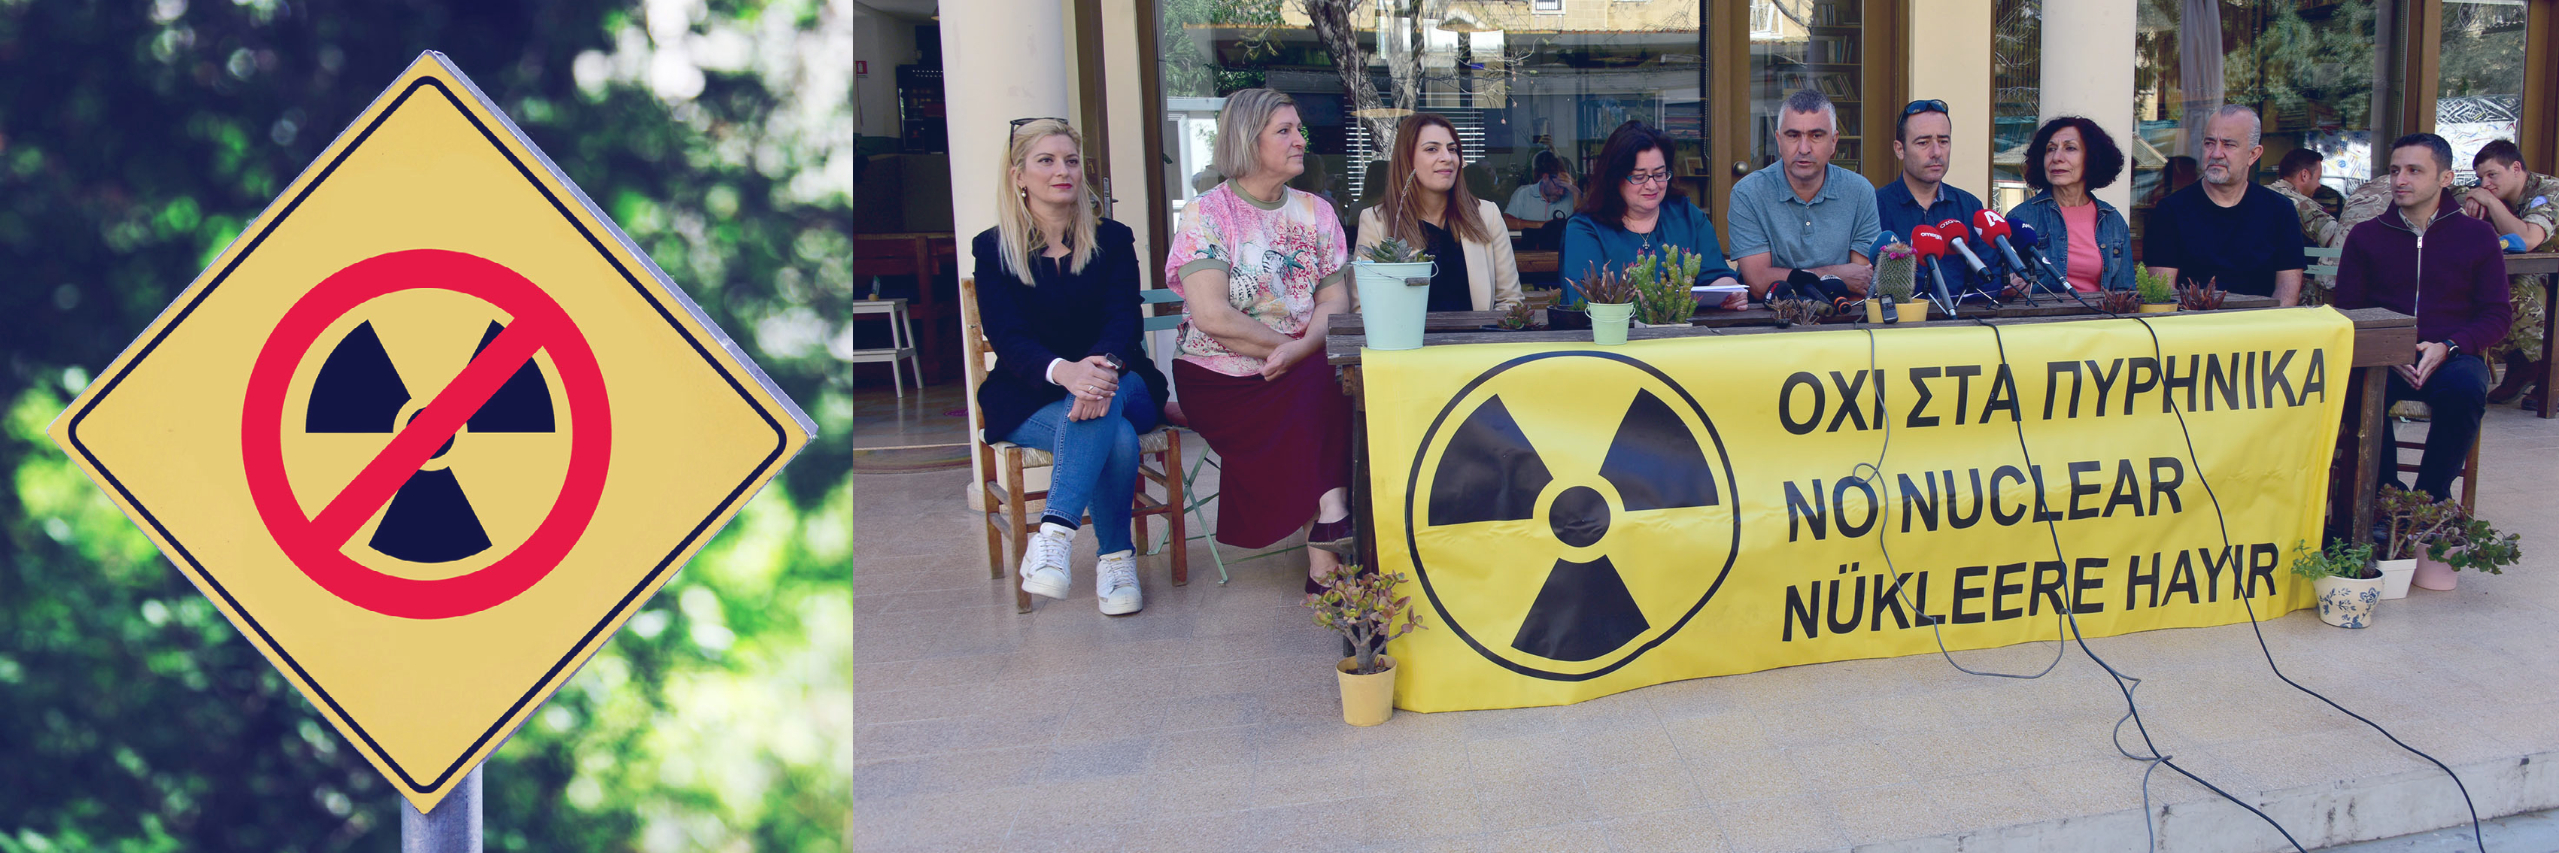 Akkuyu’da Açılması Planlanan Nükleer Santrale Karşı Iki Toplumlu Eylem Yapılıyor